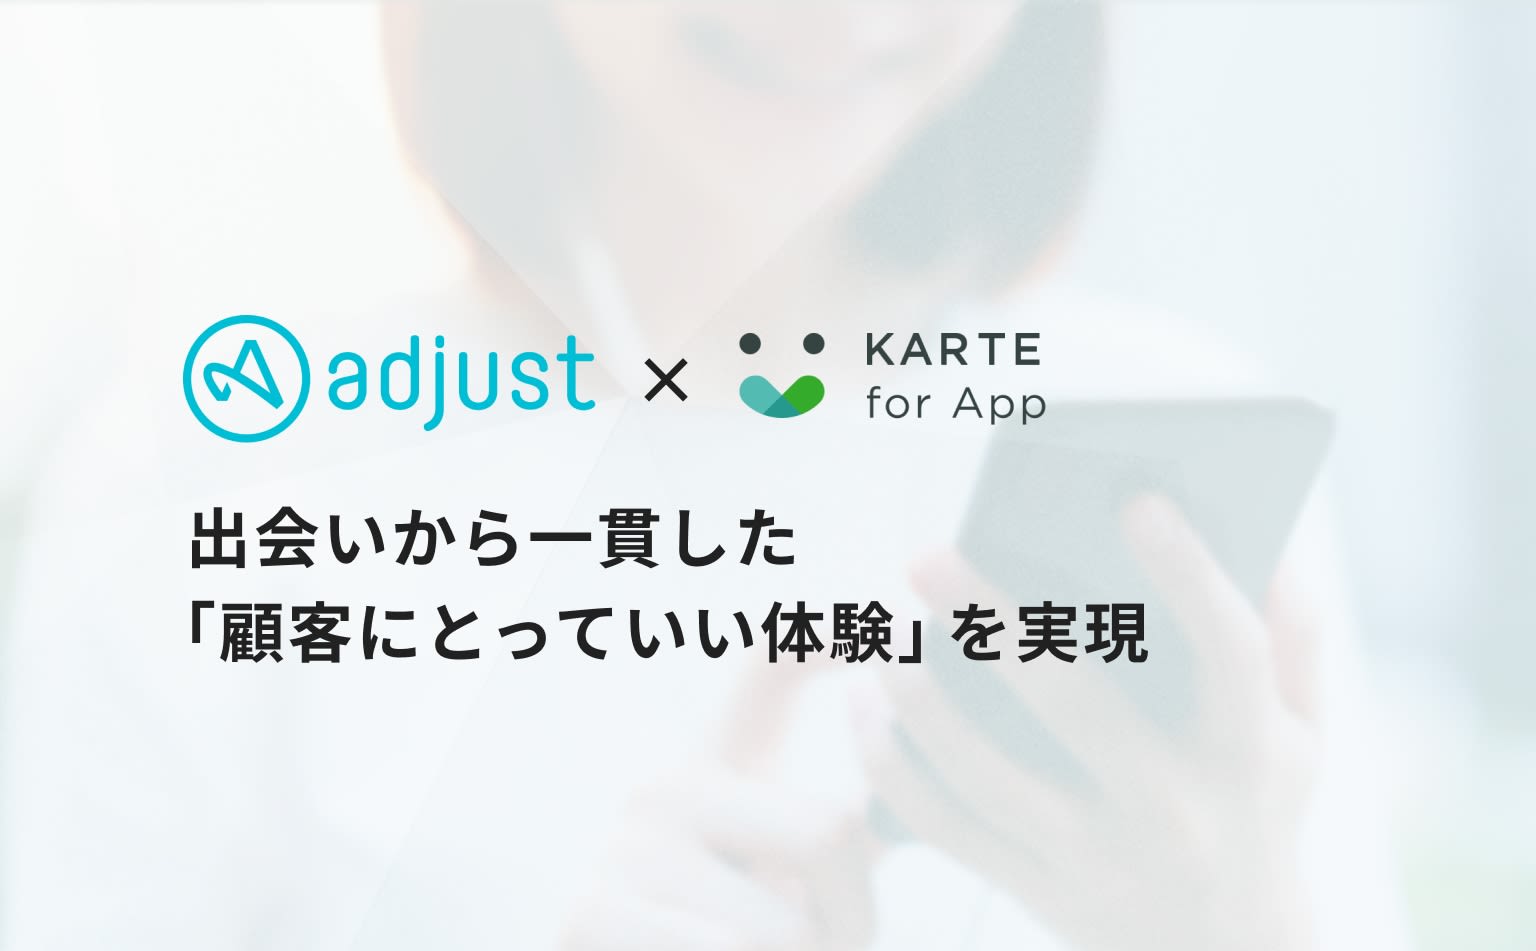 アプリダウンロード前後の体験をシームレスに繋げる。KARTE for AppとAdjustが連携し実現するきめ細やかなコミュニケーション